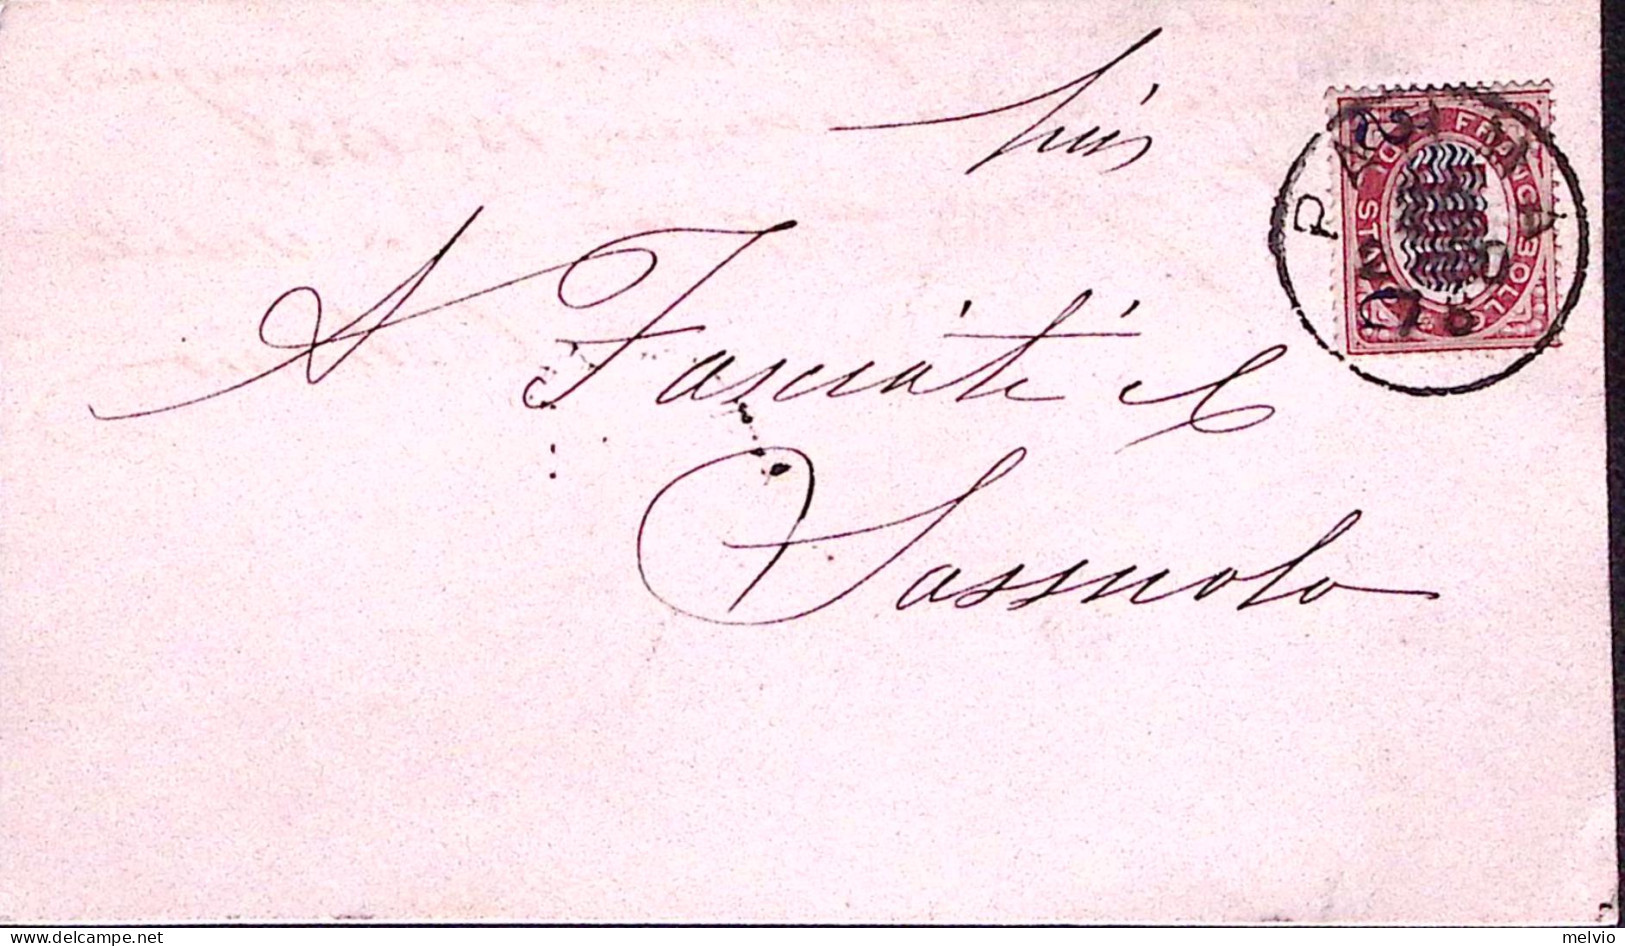 1880-FR.LLI SERVIZIO Sopr C.2/5,00 Su Cartolina - Marcophilia